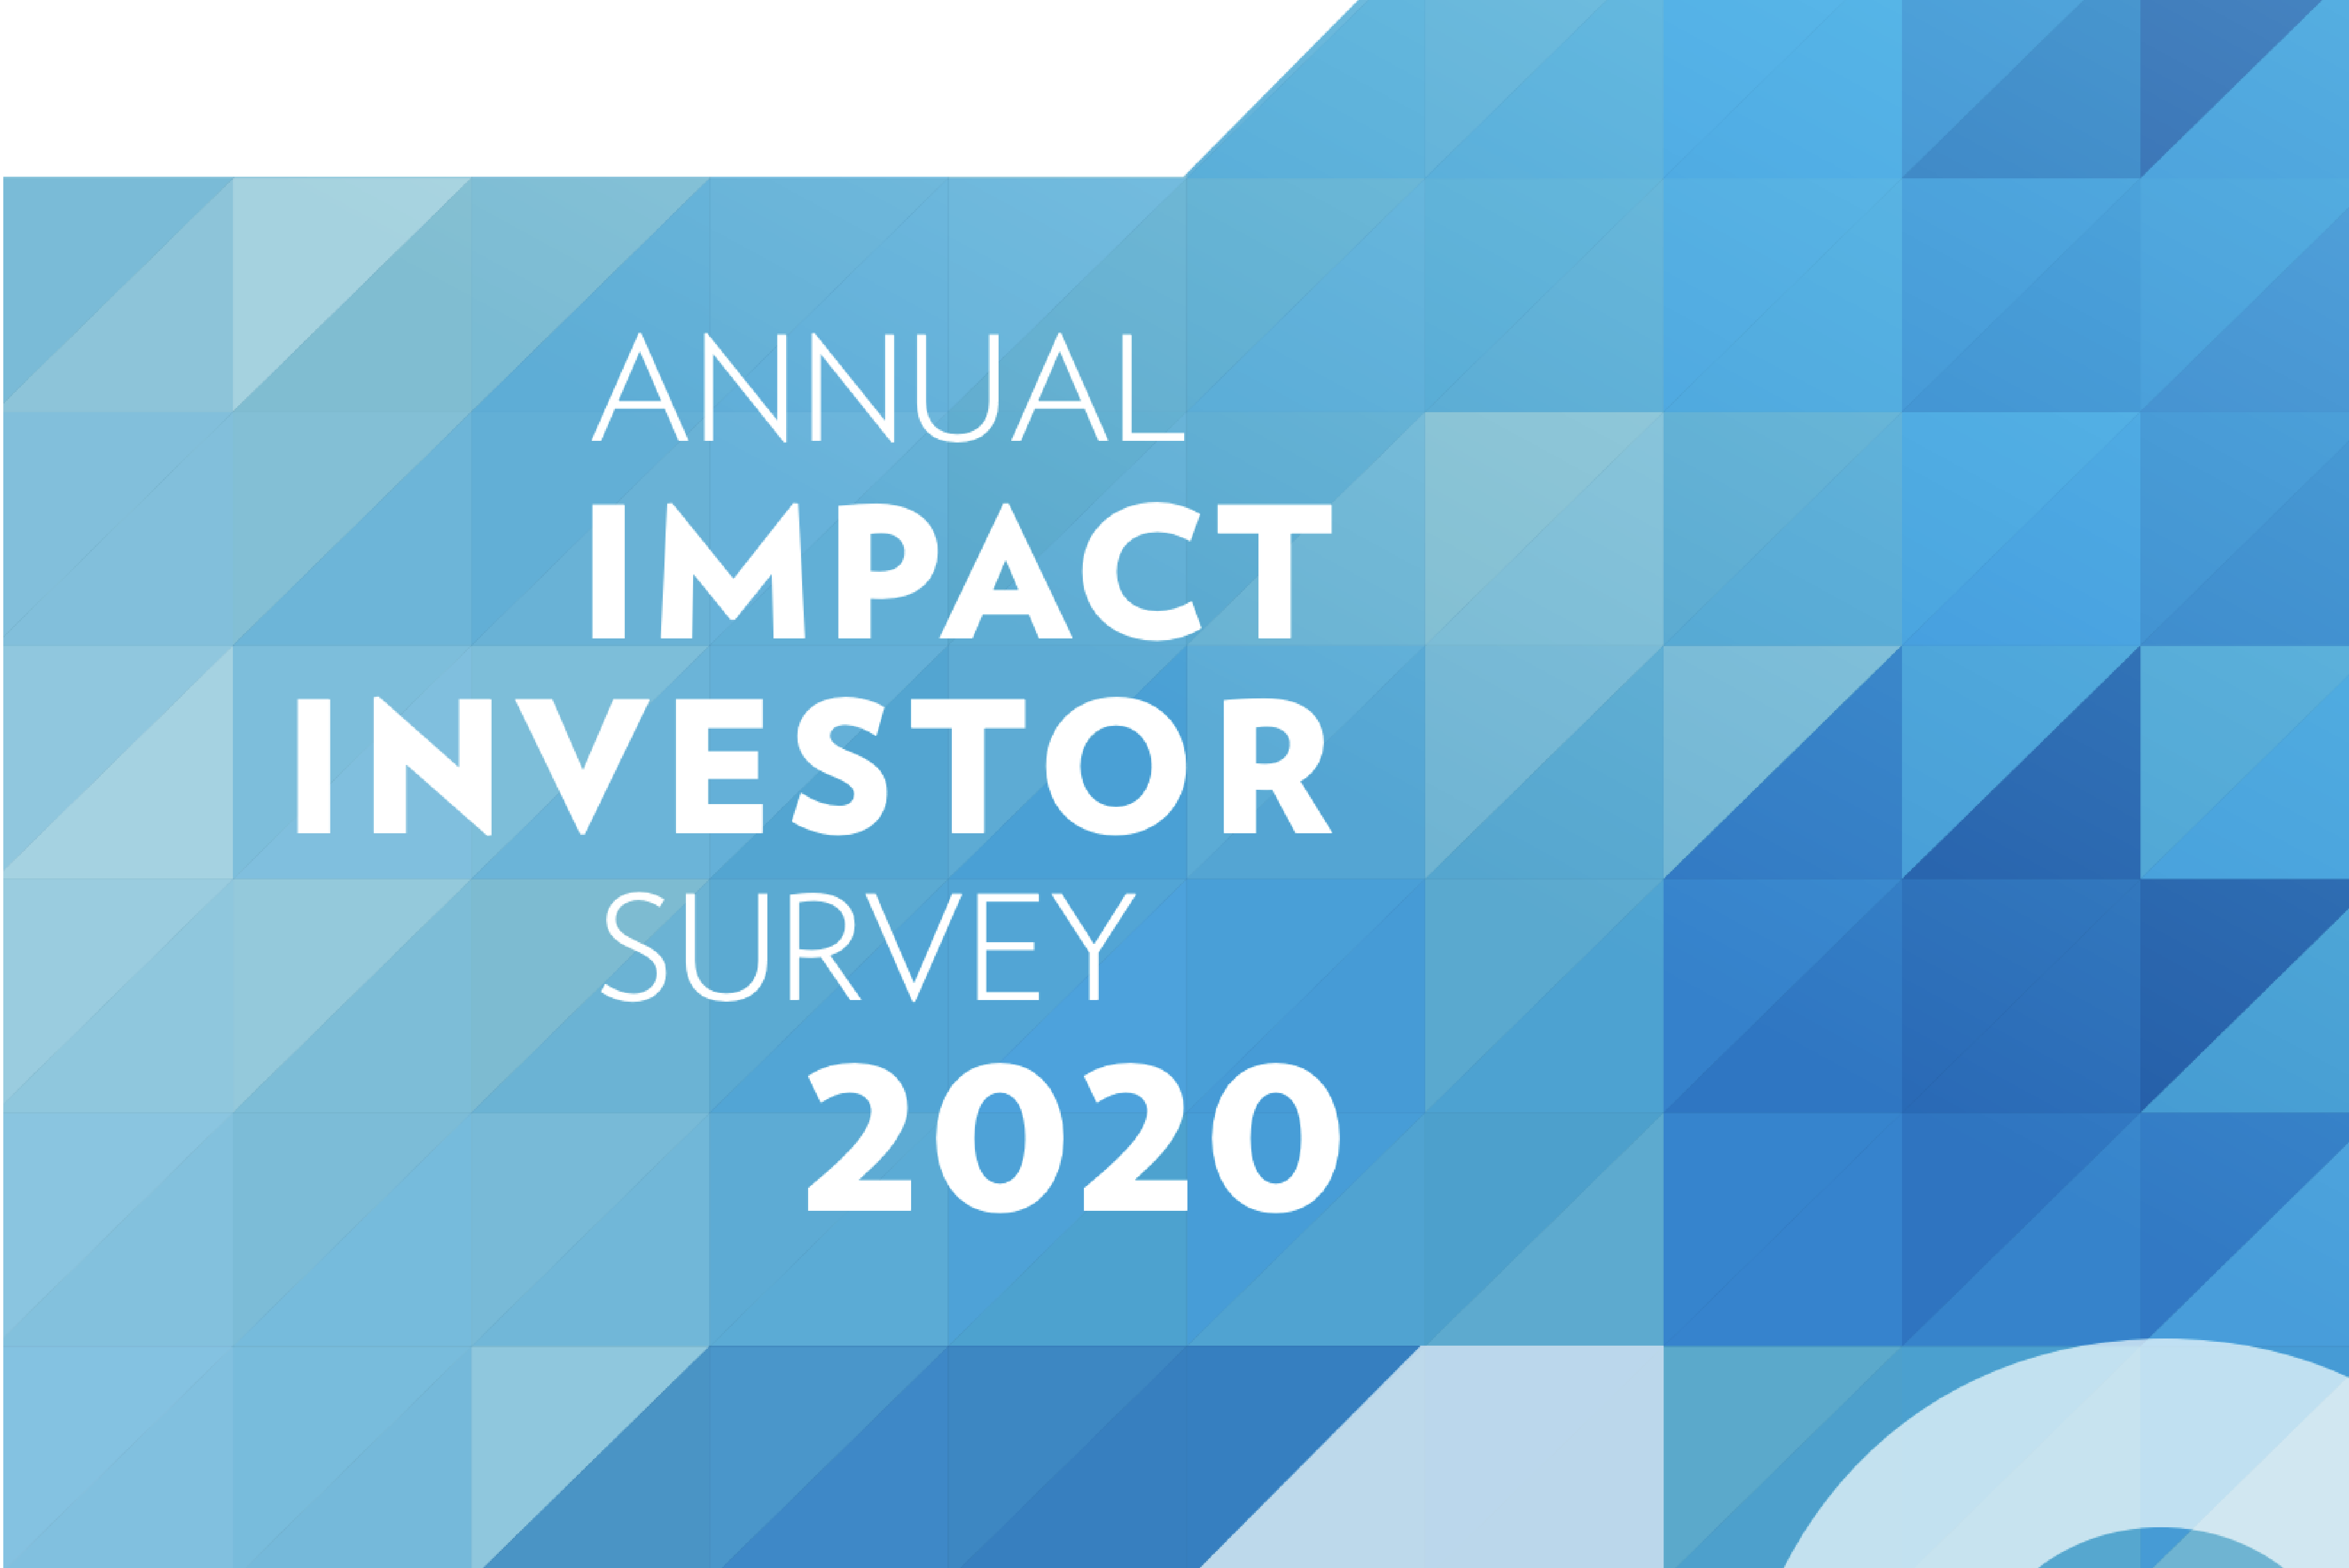 Annual Impact Investor Survey 2020